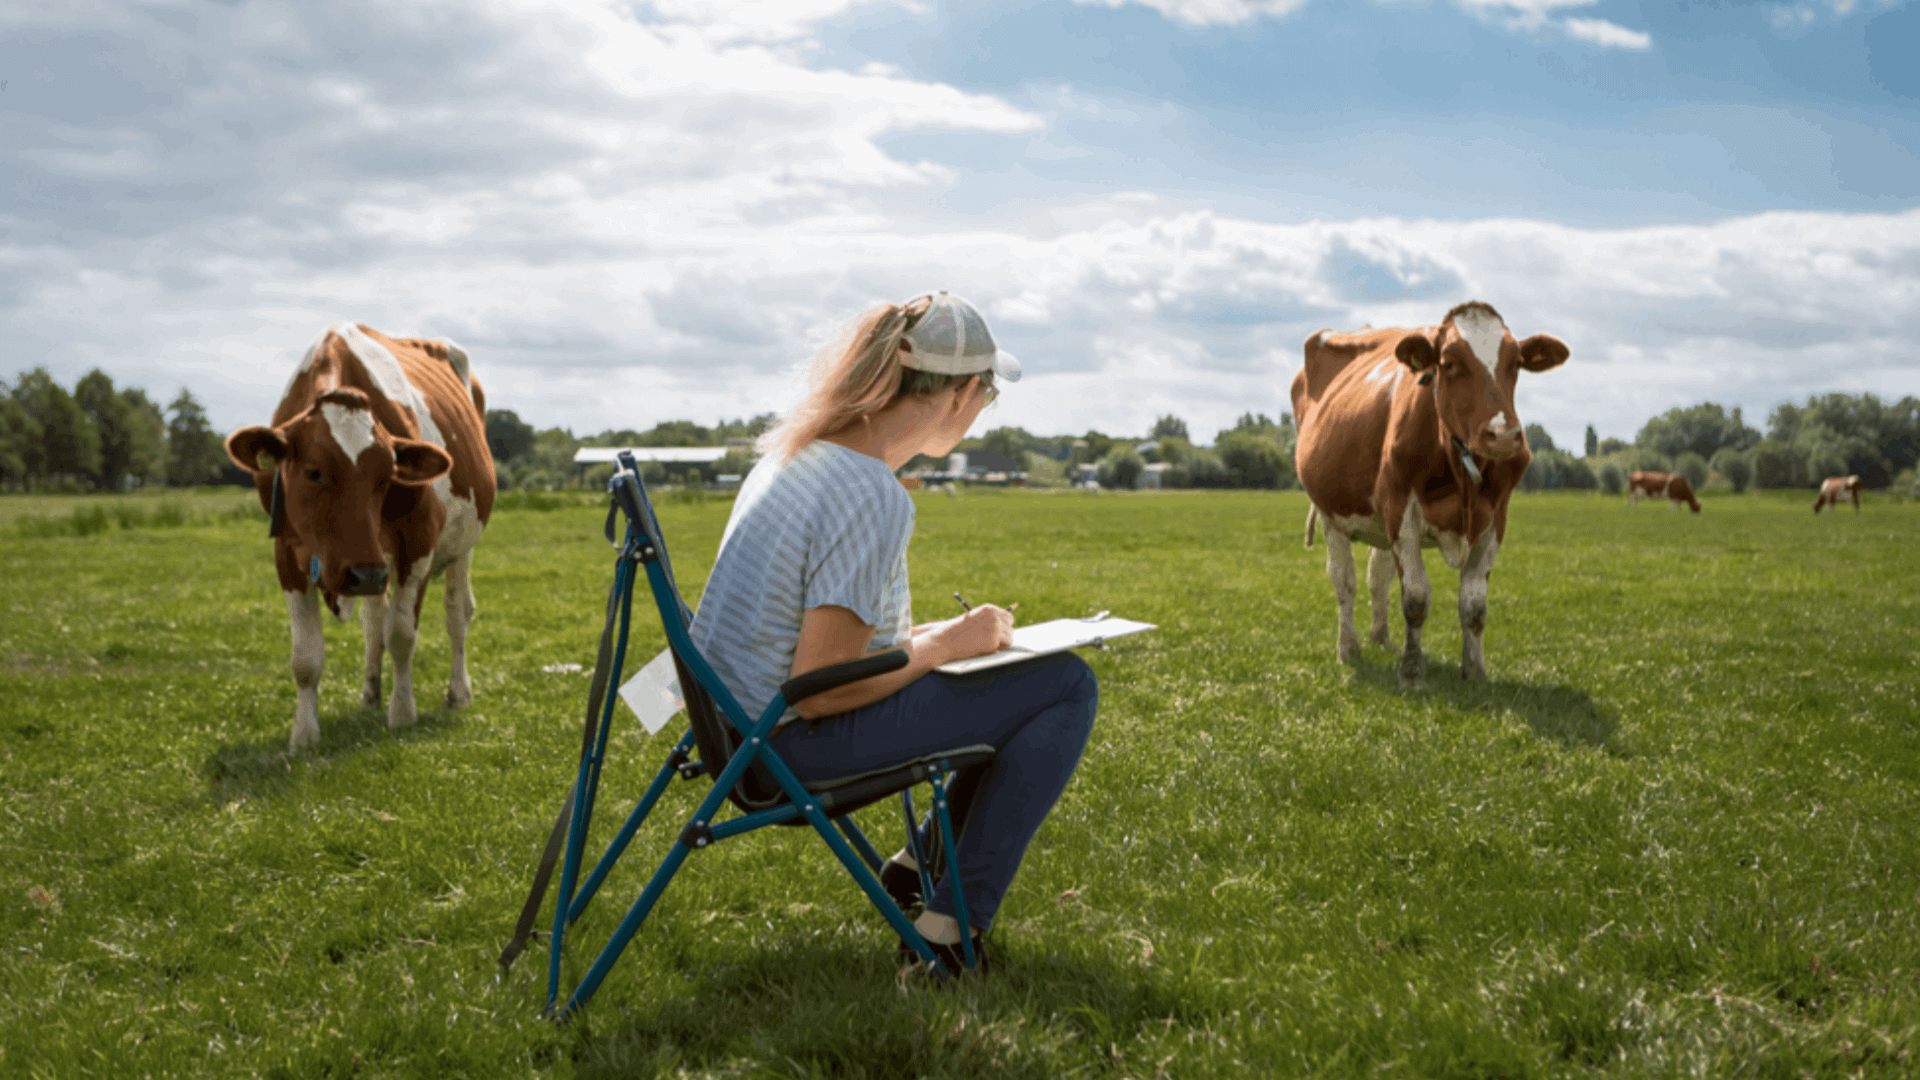 Workshop koeien tekenen in het weiland